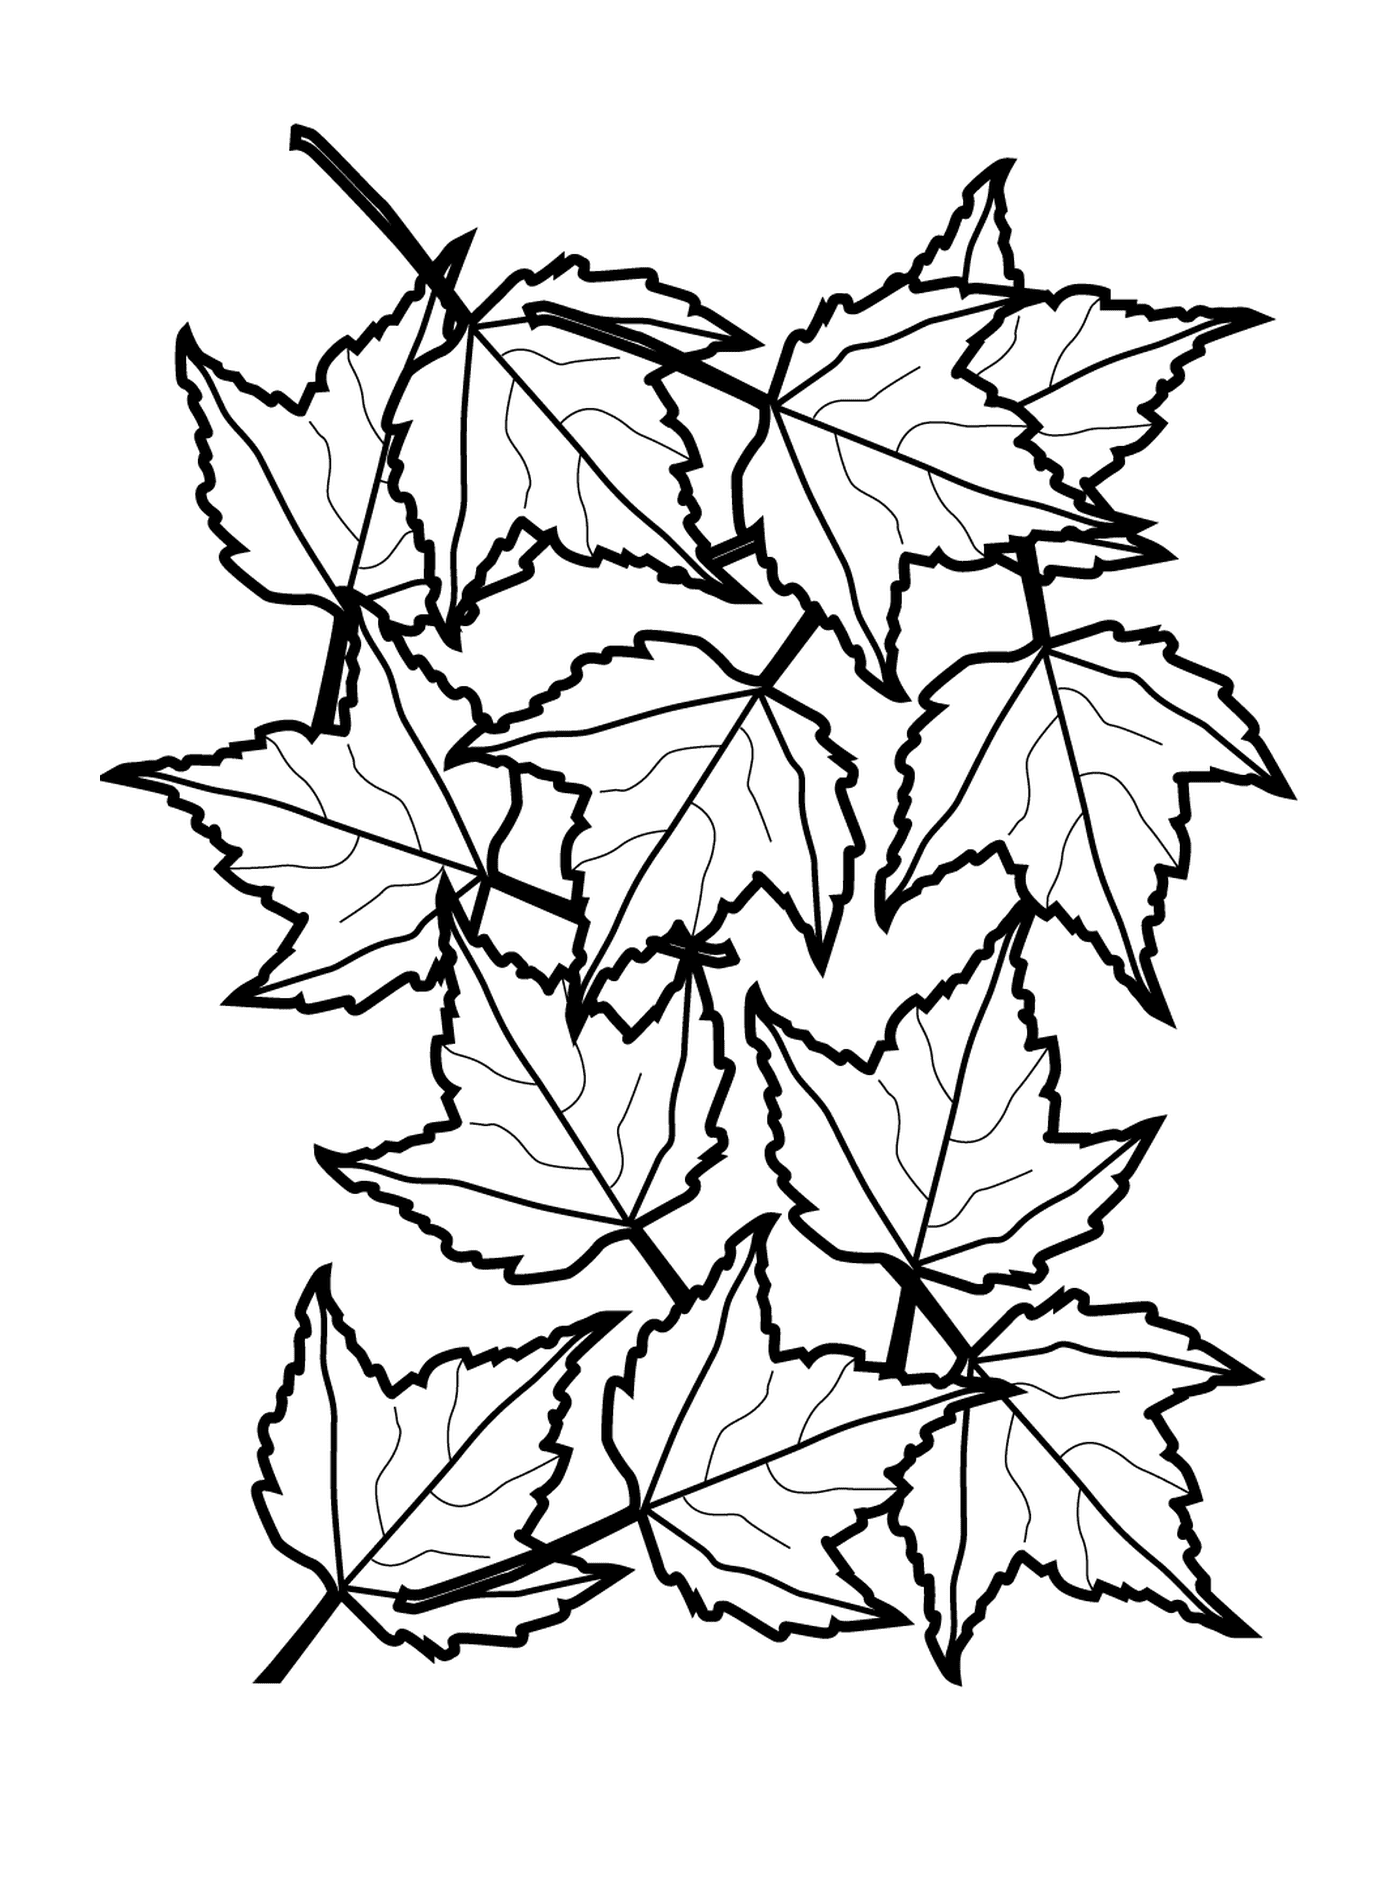  Uma linha de folhas caindo 